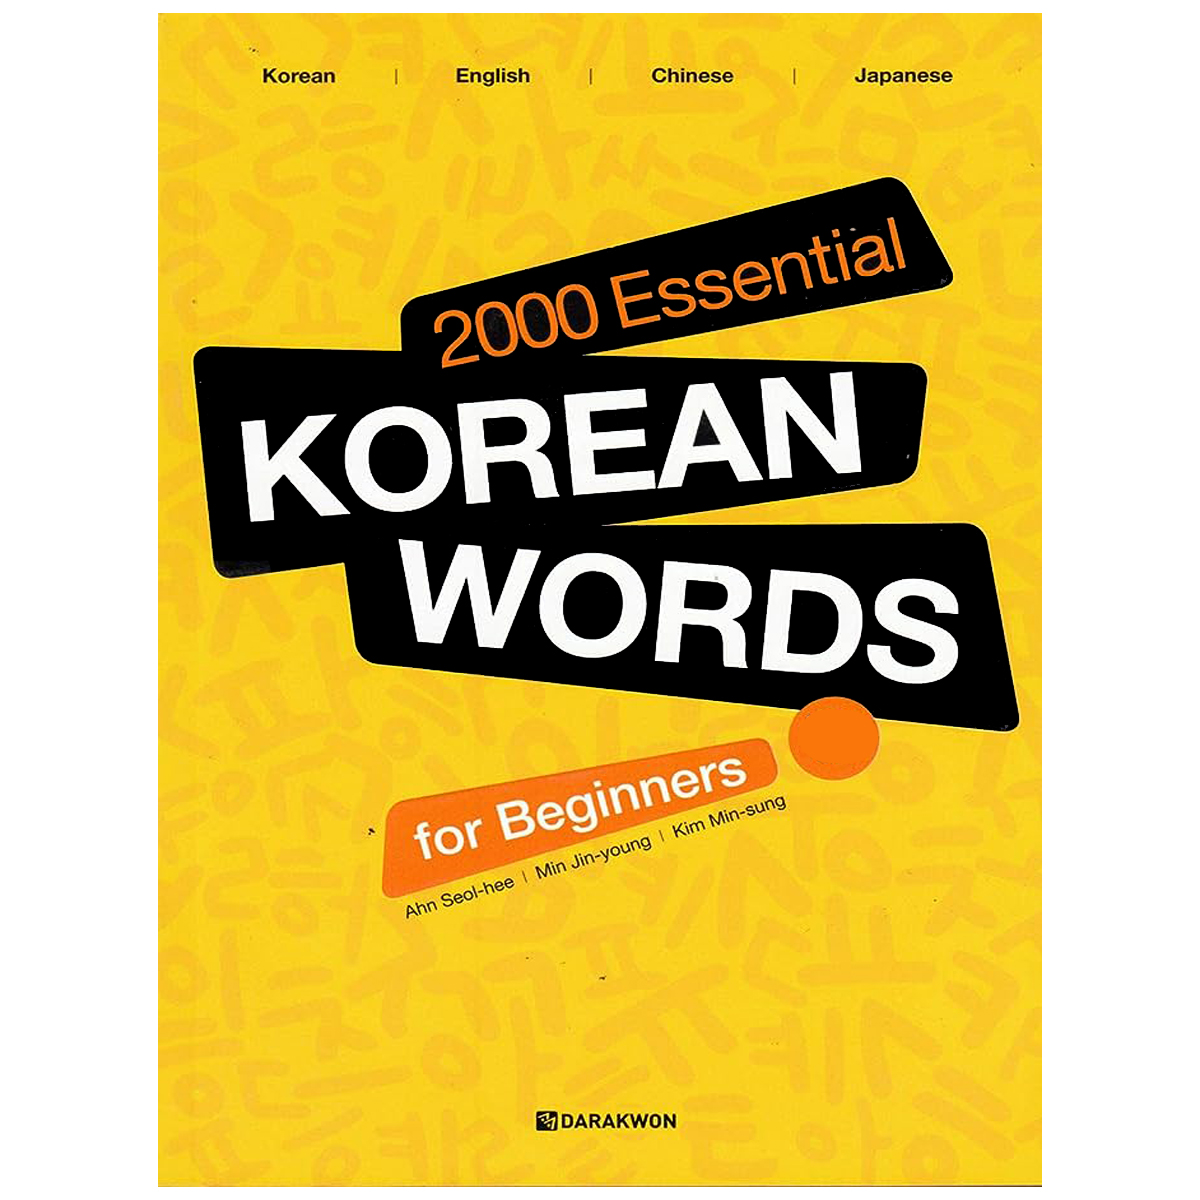 2000Essential Korean Words for Beginners